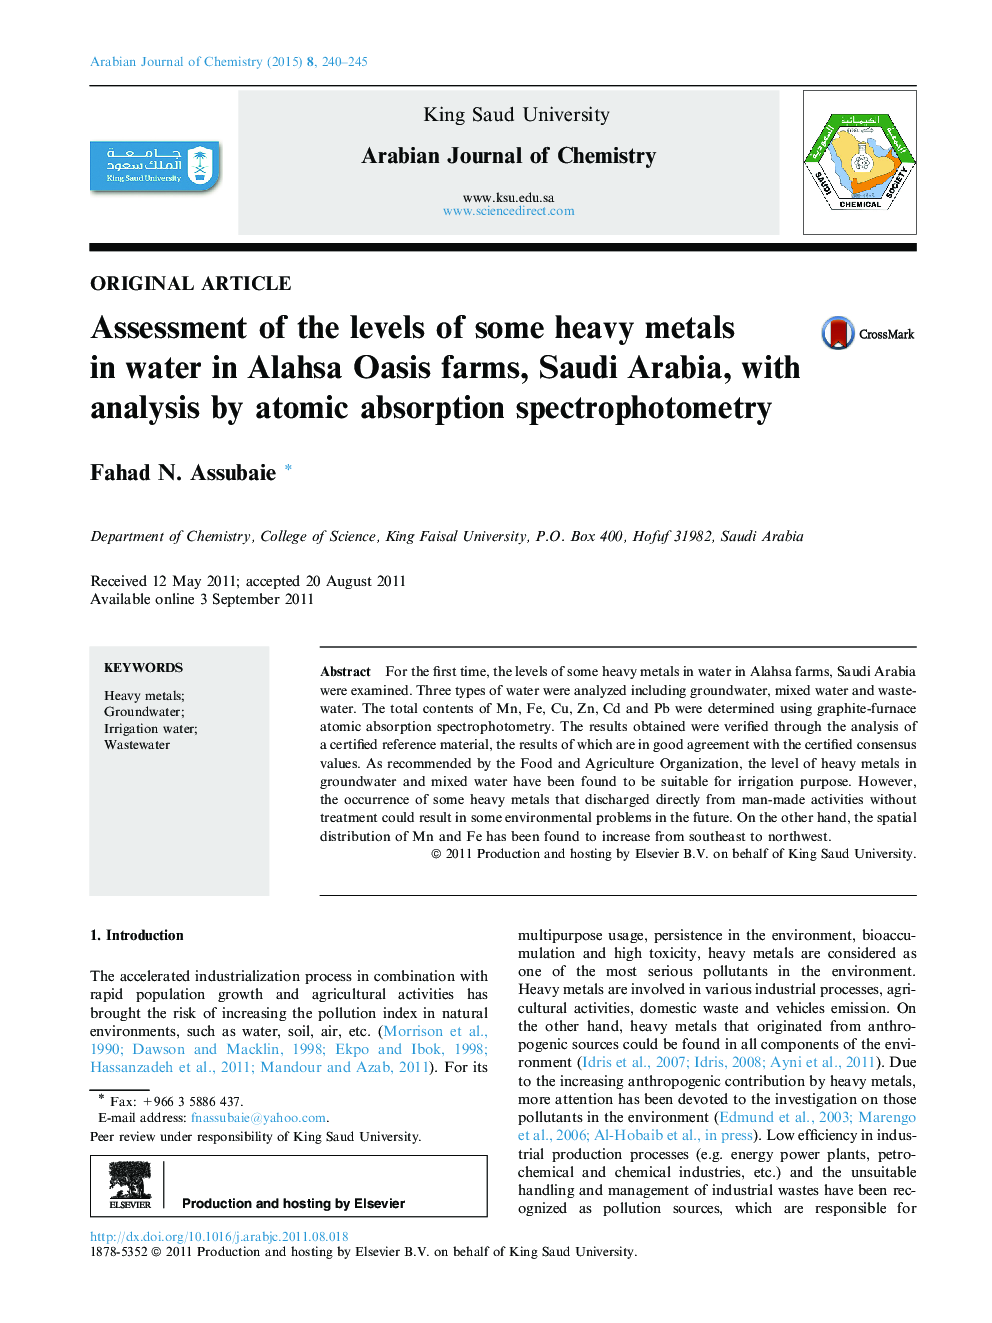 ارزیابی سطوح برخی از فلزات سنگین در آب در مزارع اوازای آلله عربستان سعودی با تجزیه و تحلیل با استفاده از اسپکتروفتومتری جذب اتمی 